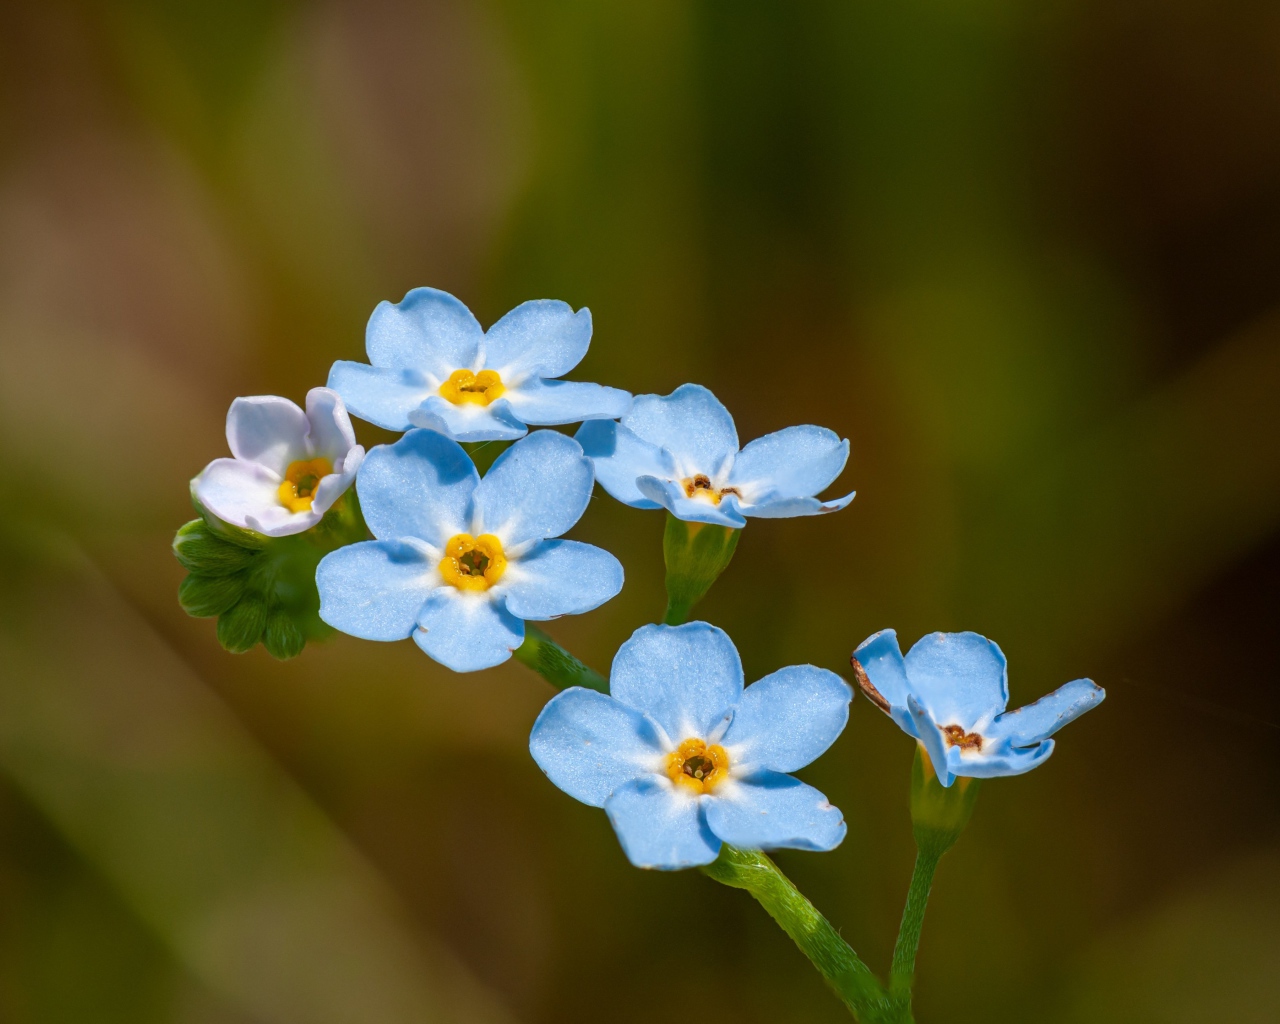 Голубые маленькие цветы незабудки в лучах солнца